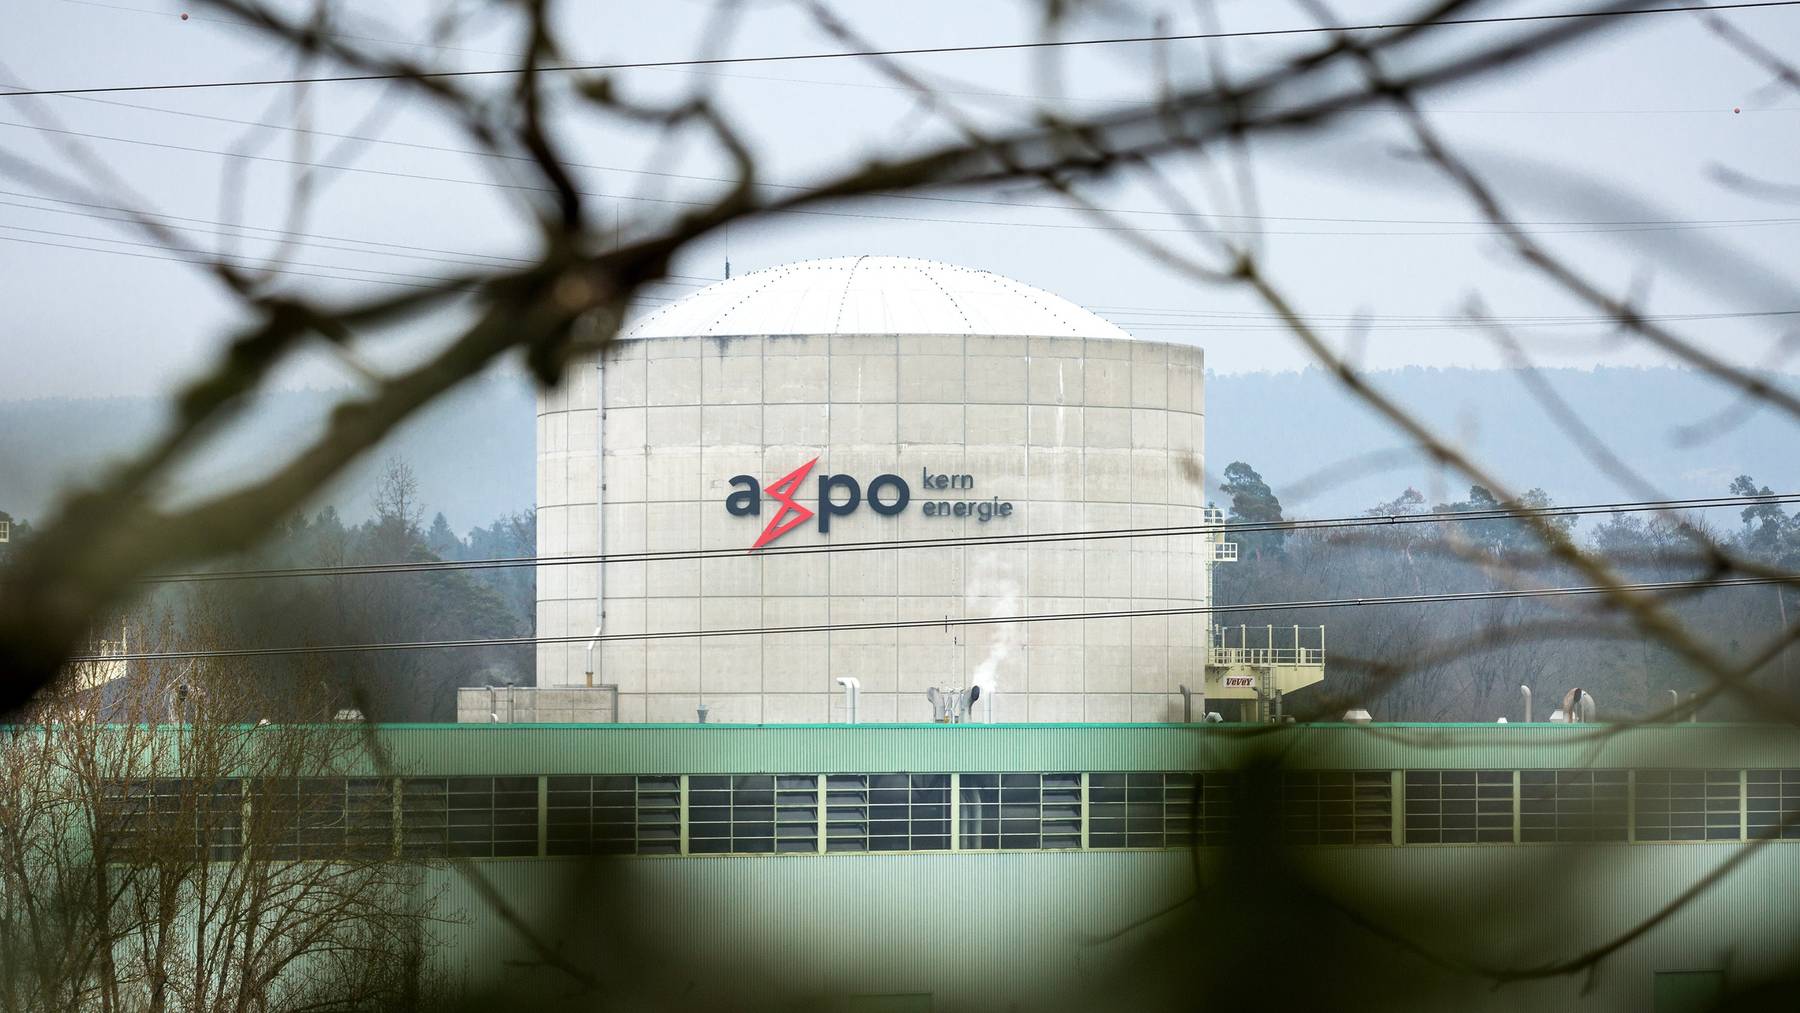 Die Axpo besitzt und betreibt unter anderem das Kernkraftwerk Beznau. Der Konzern investiert aber vermehrt in die Stromproduktion durch erneuerbare Energieträger wie Wind und Sonne.